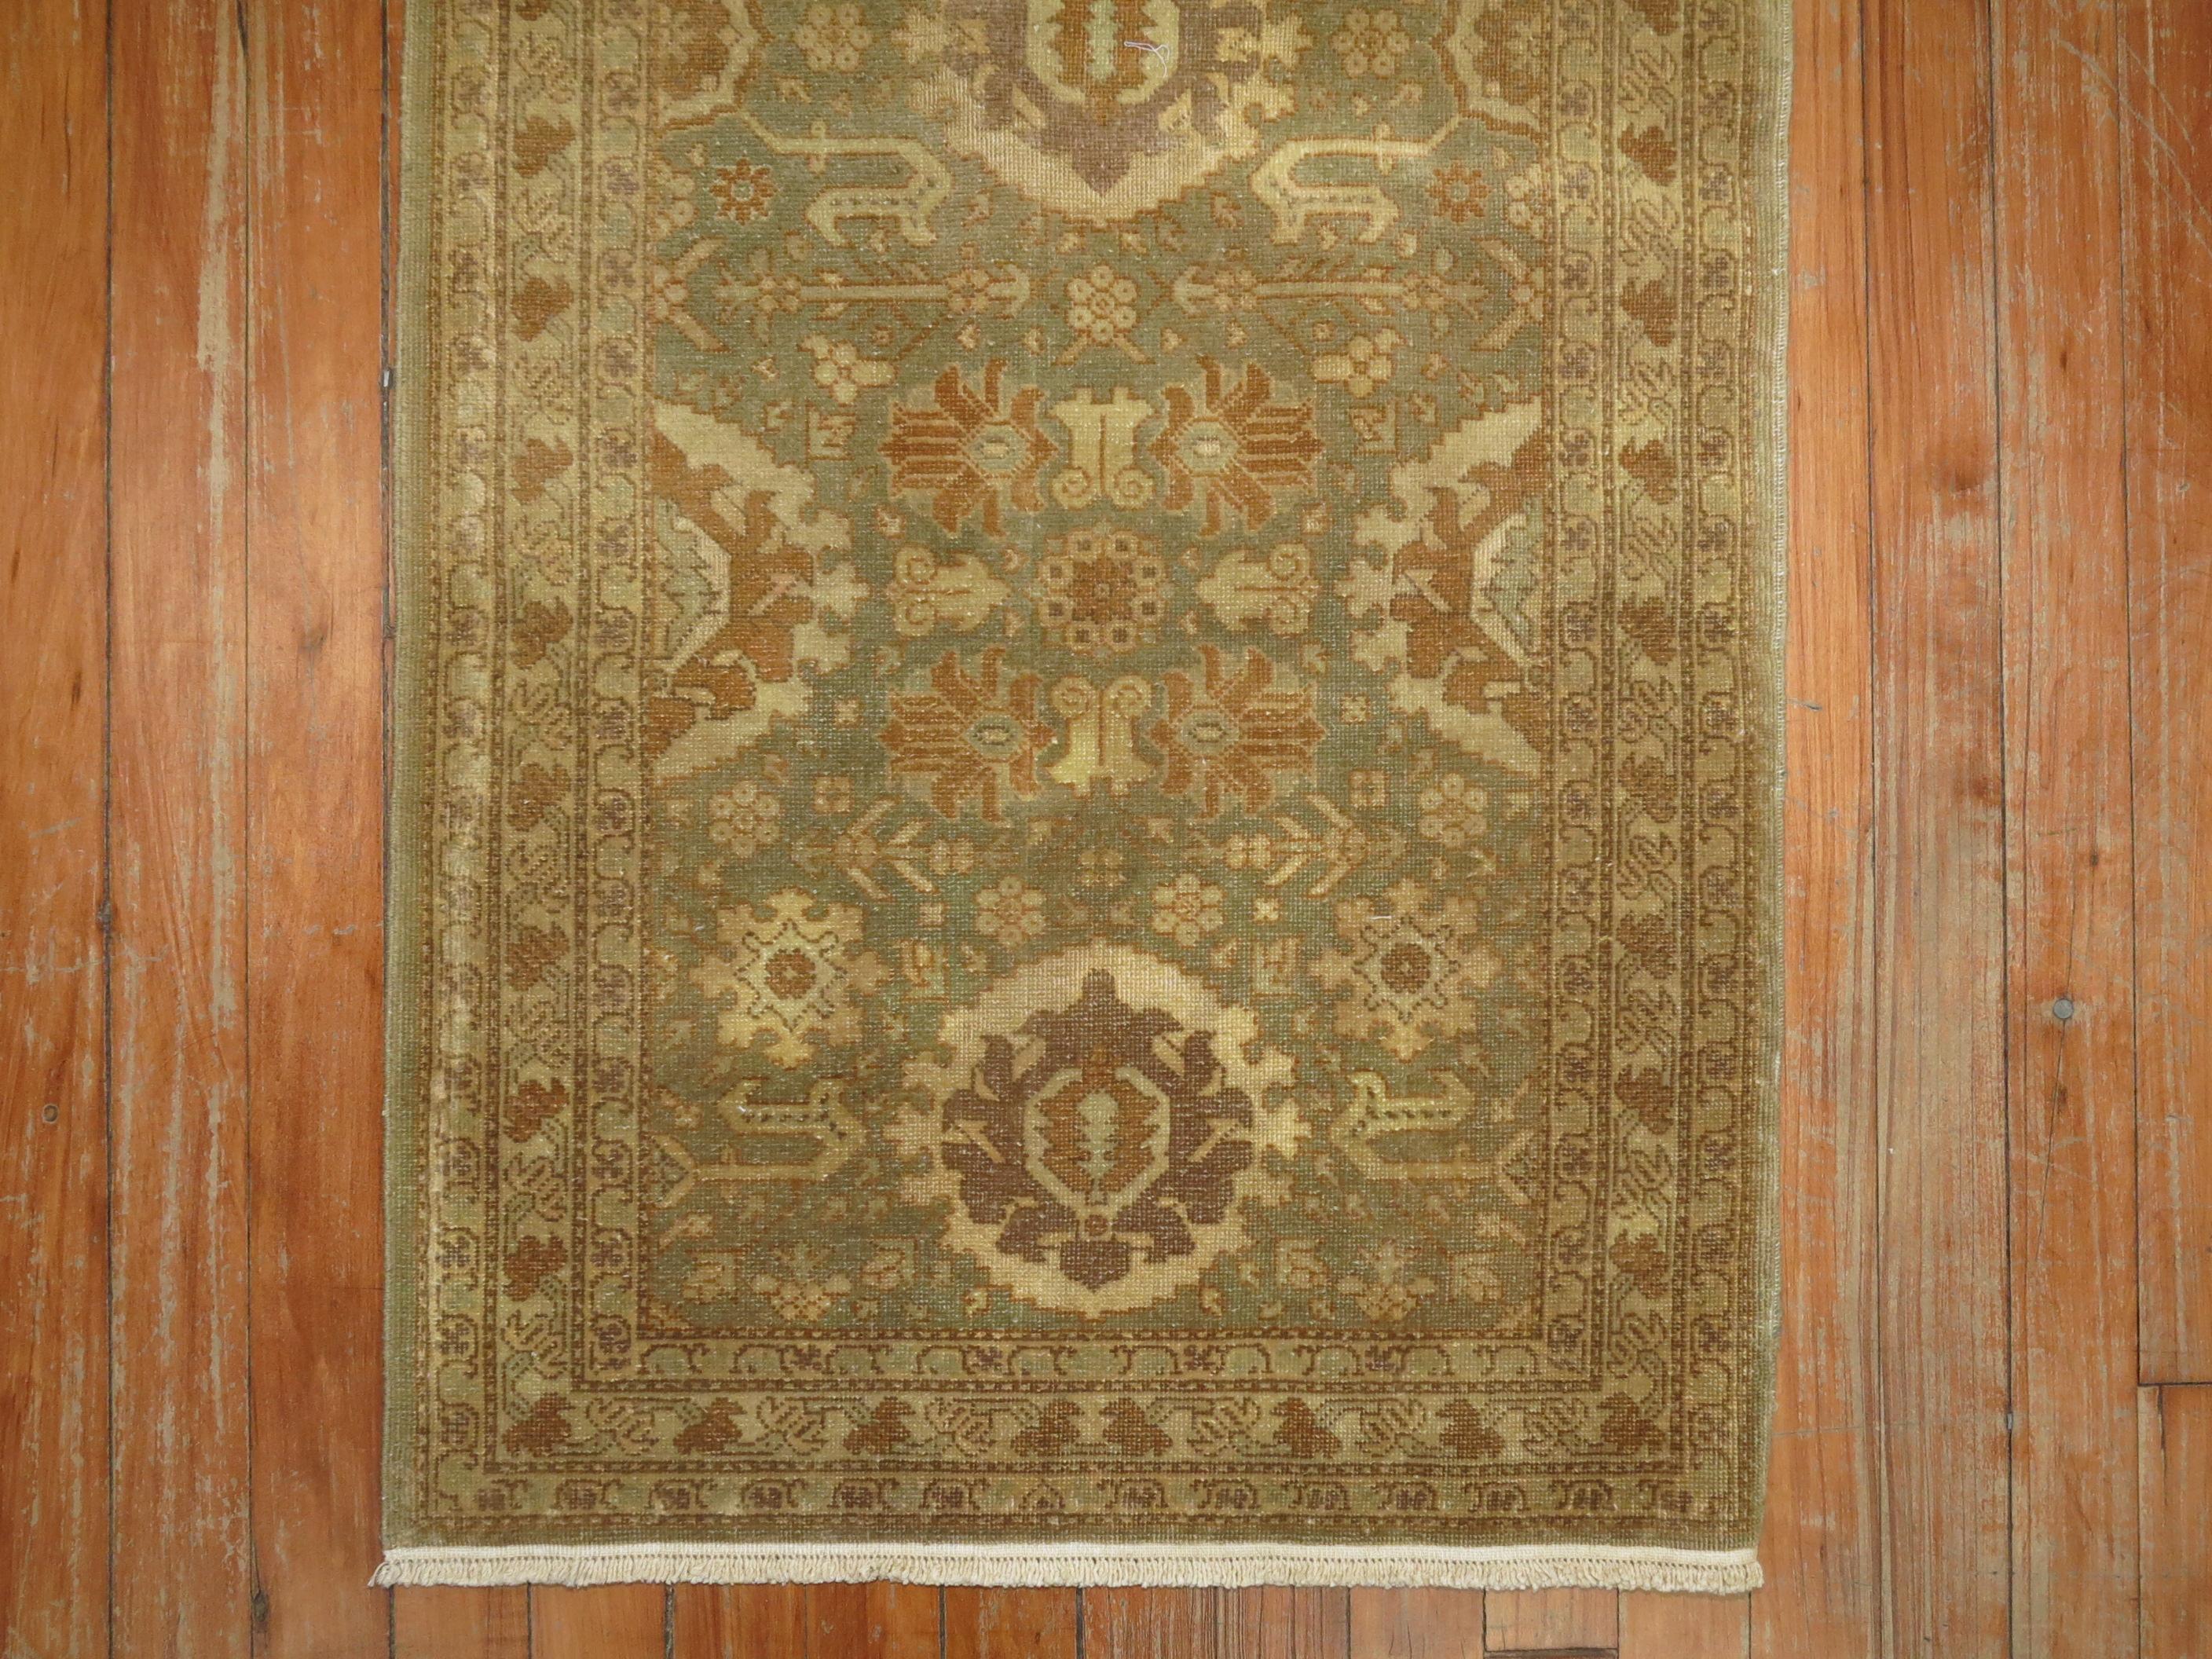 Rare petit tapis persan Tabriz dans les tons vert, brun et or, datant du milieu du 20e siècle.

Mesures : 2' x 4'3''.